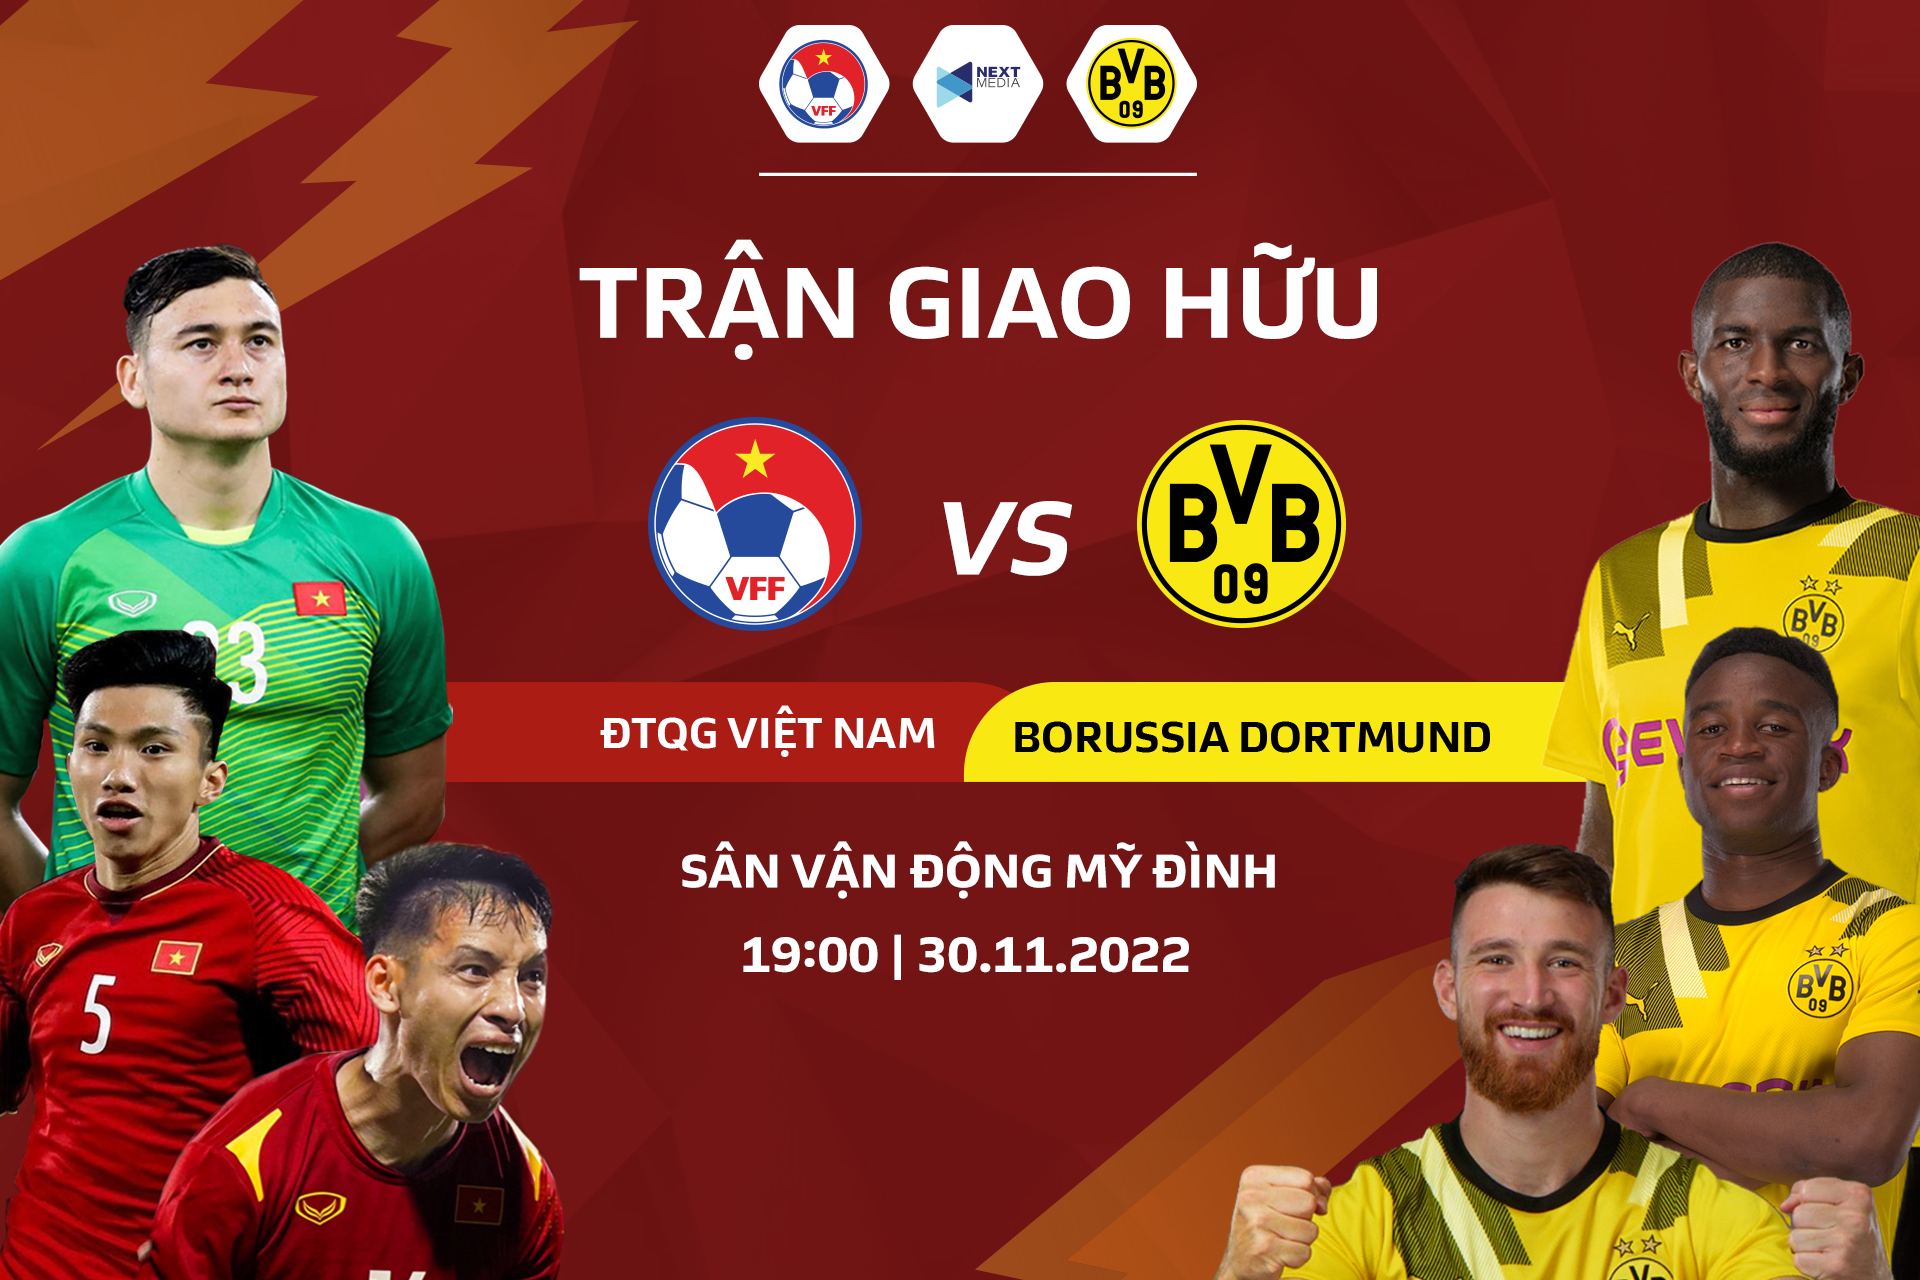 Tình yêu của chúng ta dành cho bóng đá Việt Nam không bao giờ nguội. Xem hình ảnh liên quan đến Liên đoàn bóng đá Việt Nam để cập nhật thông tin mới nhất về các giải đấu và đội tuyển.